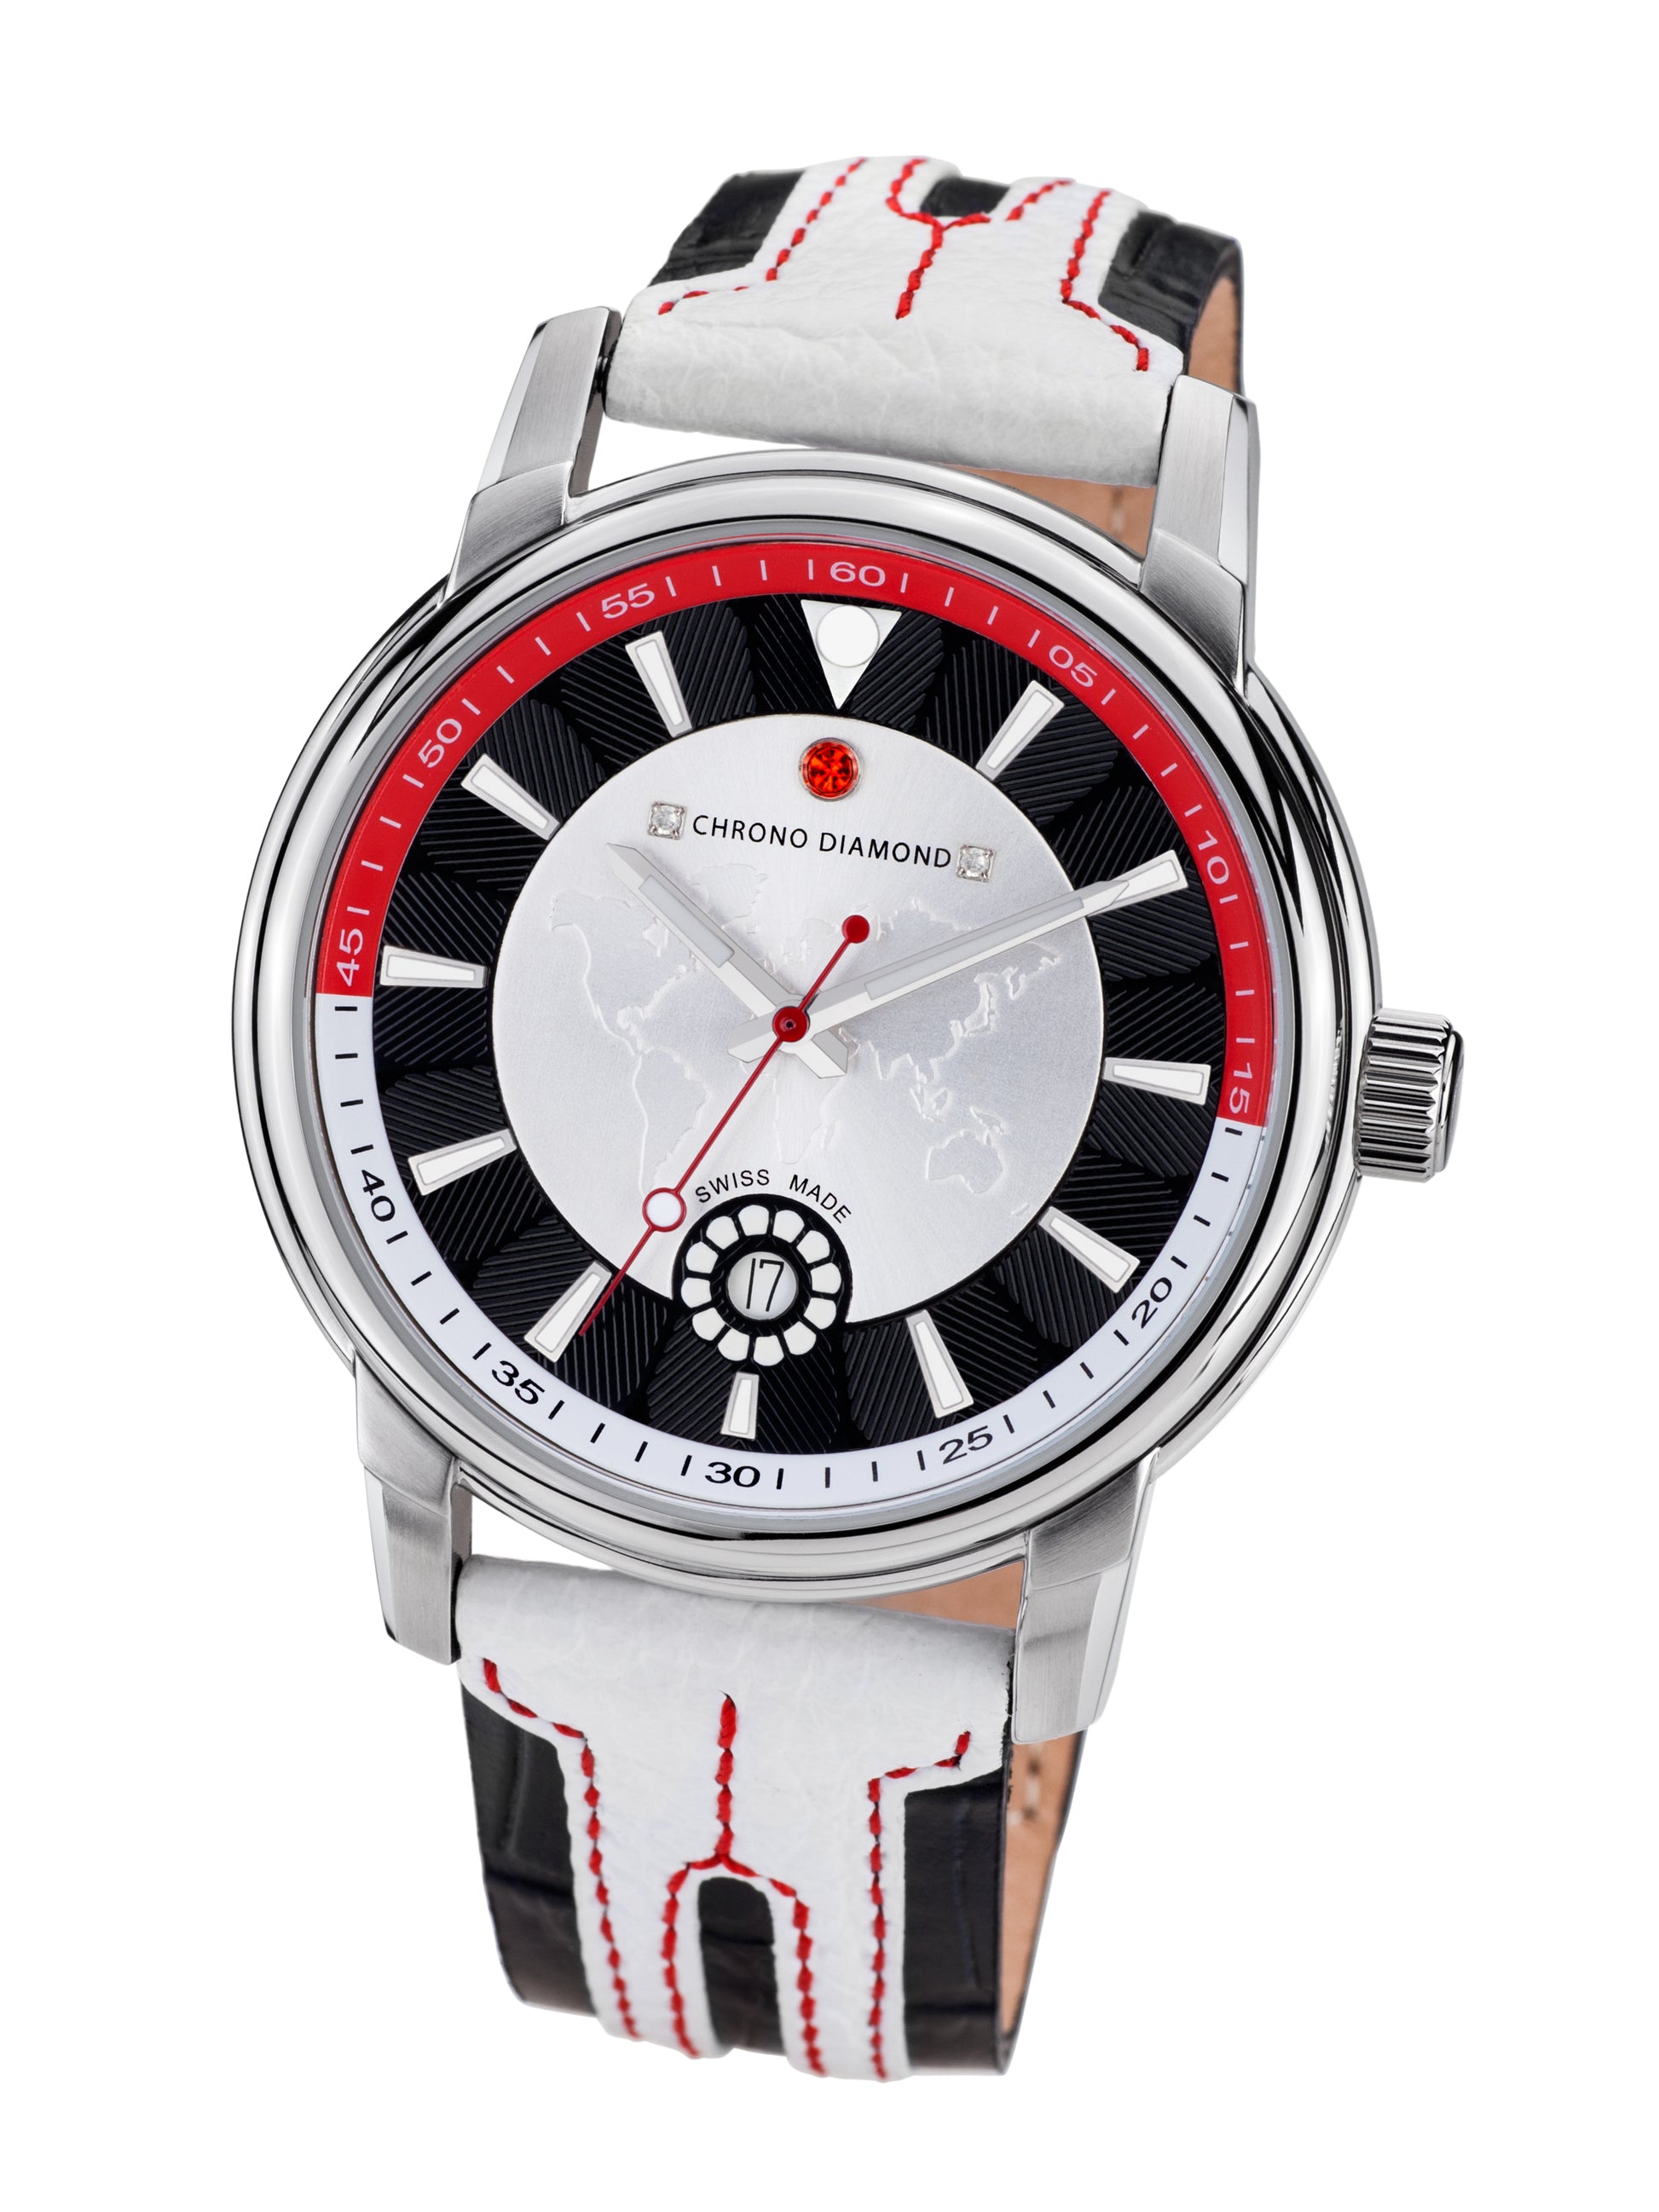 Automatic watches — Nereus — Chrono Diamond — white